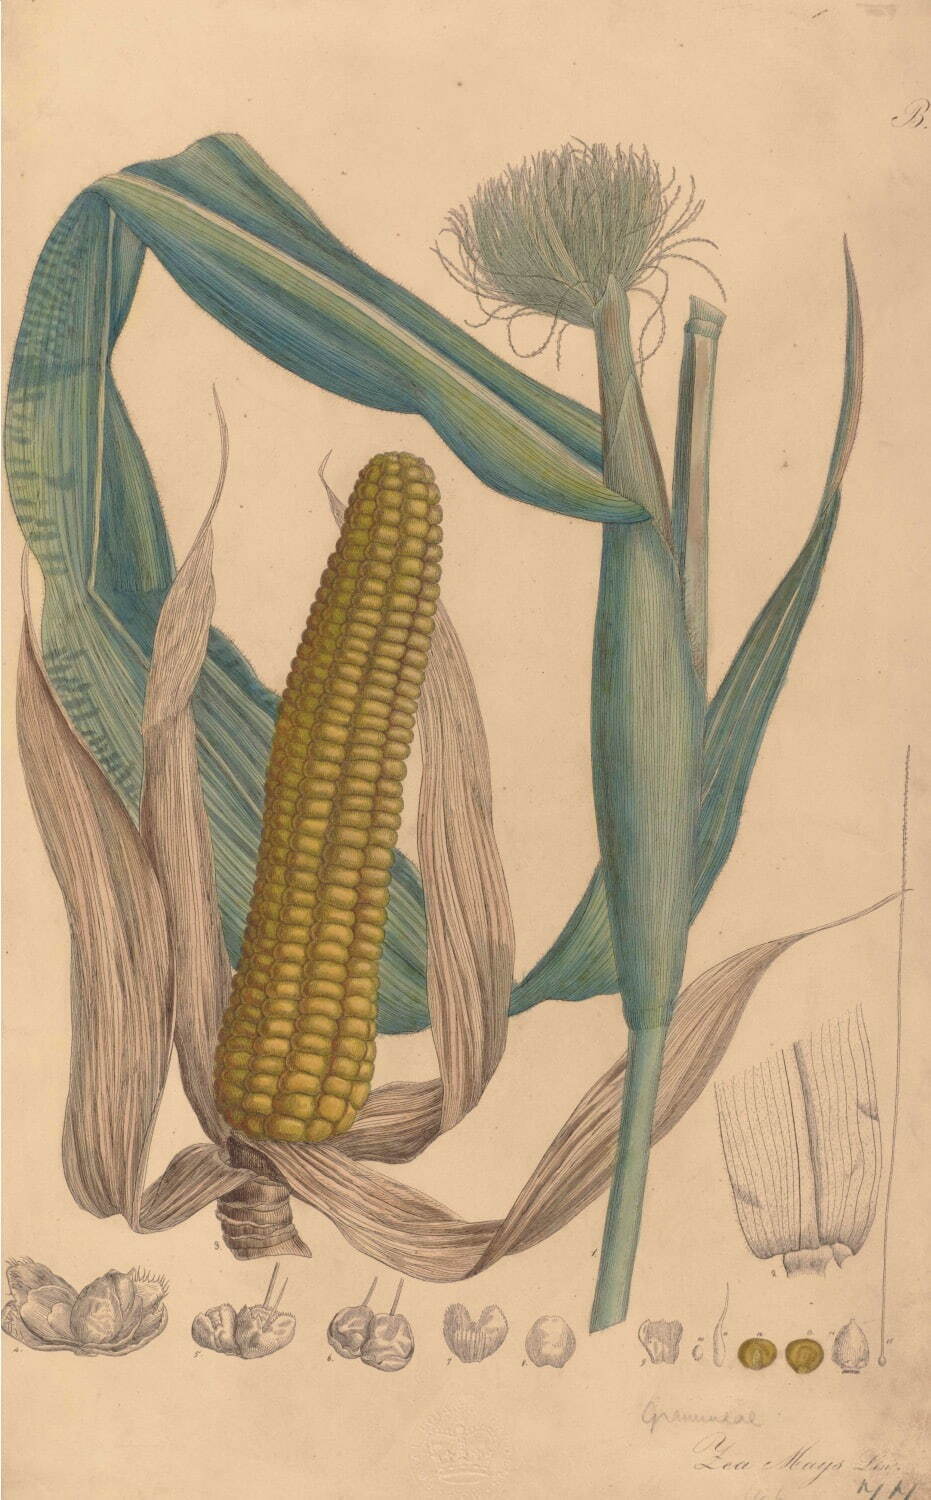 エメ・コンスタン・フィデル・アンリ 《トウモロコシ》 1828-33年
エングレーヴィング、手彩色／紙 キュー王立植物園蔵
©RBG KEW